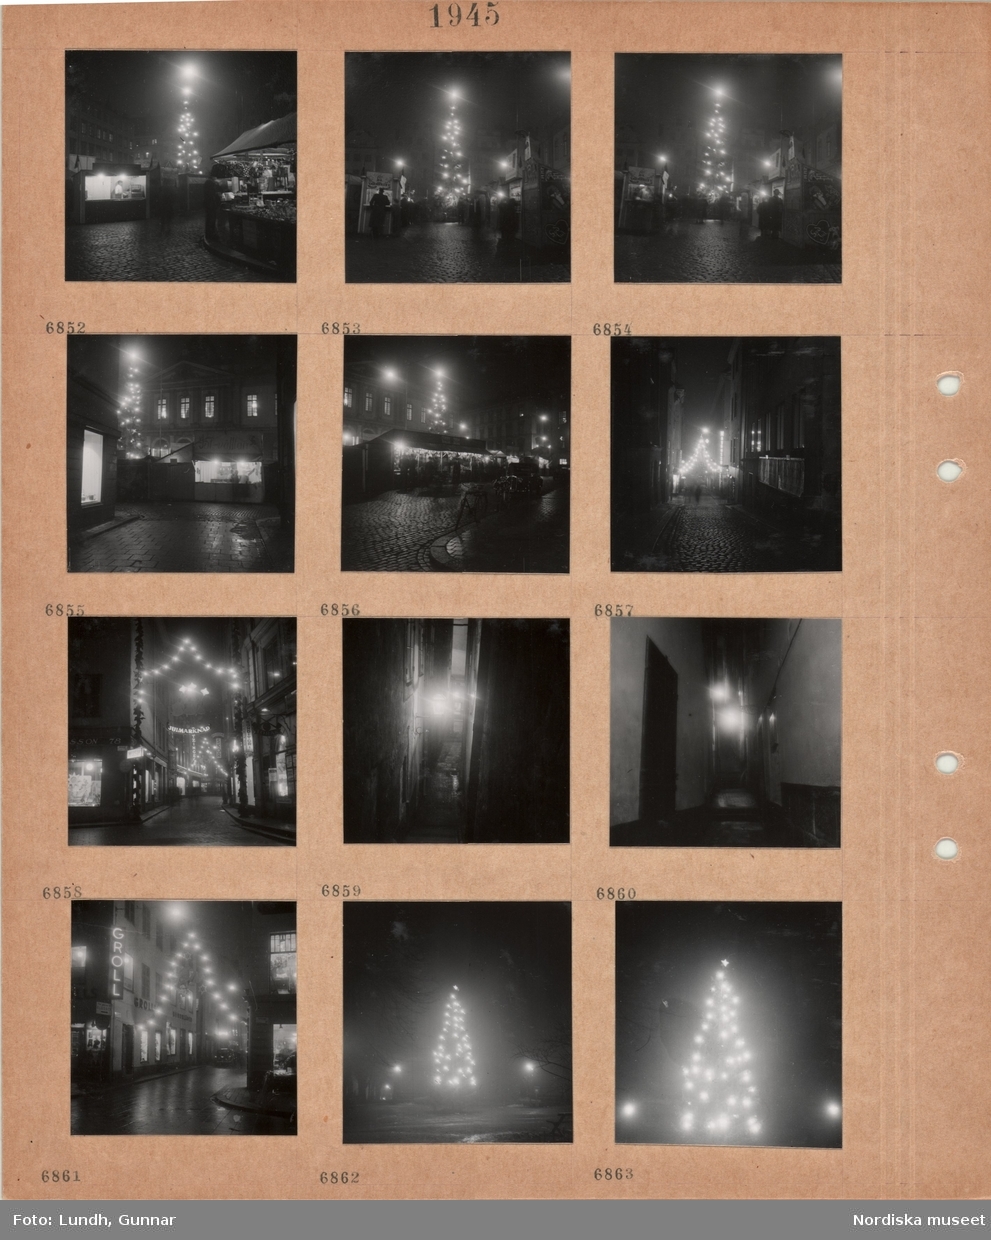 Motiv: Stockholm, Stortorgets julmarknad, salustånd, hög julgran med tänd belysning, stenlagd gata med tända juldekorationer, butiksfönster och skyltar, smal gränd med tänd vägglykta, julgran med tänd belysning.